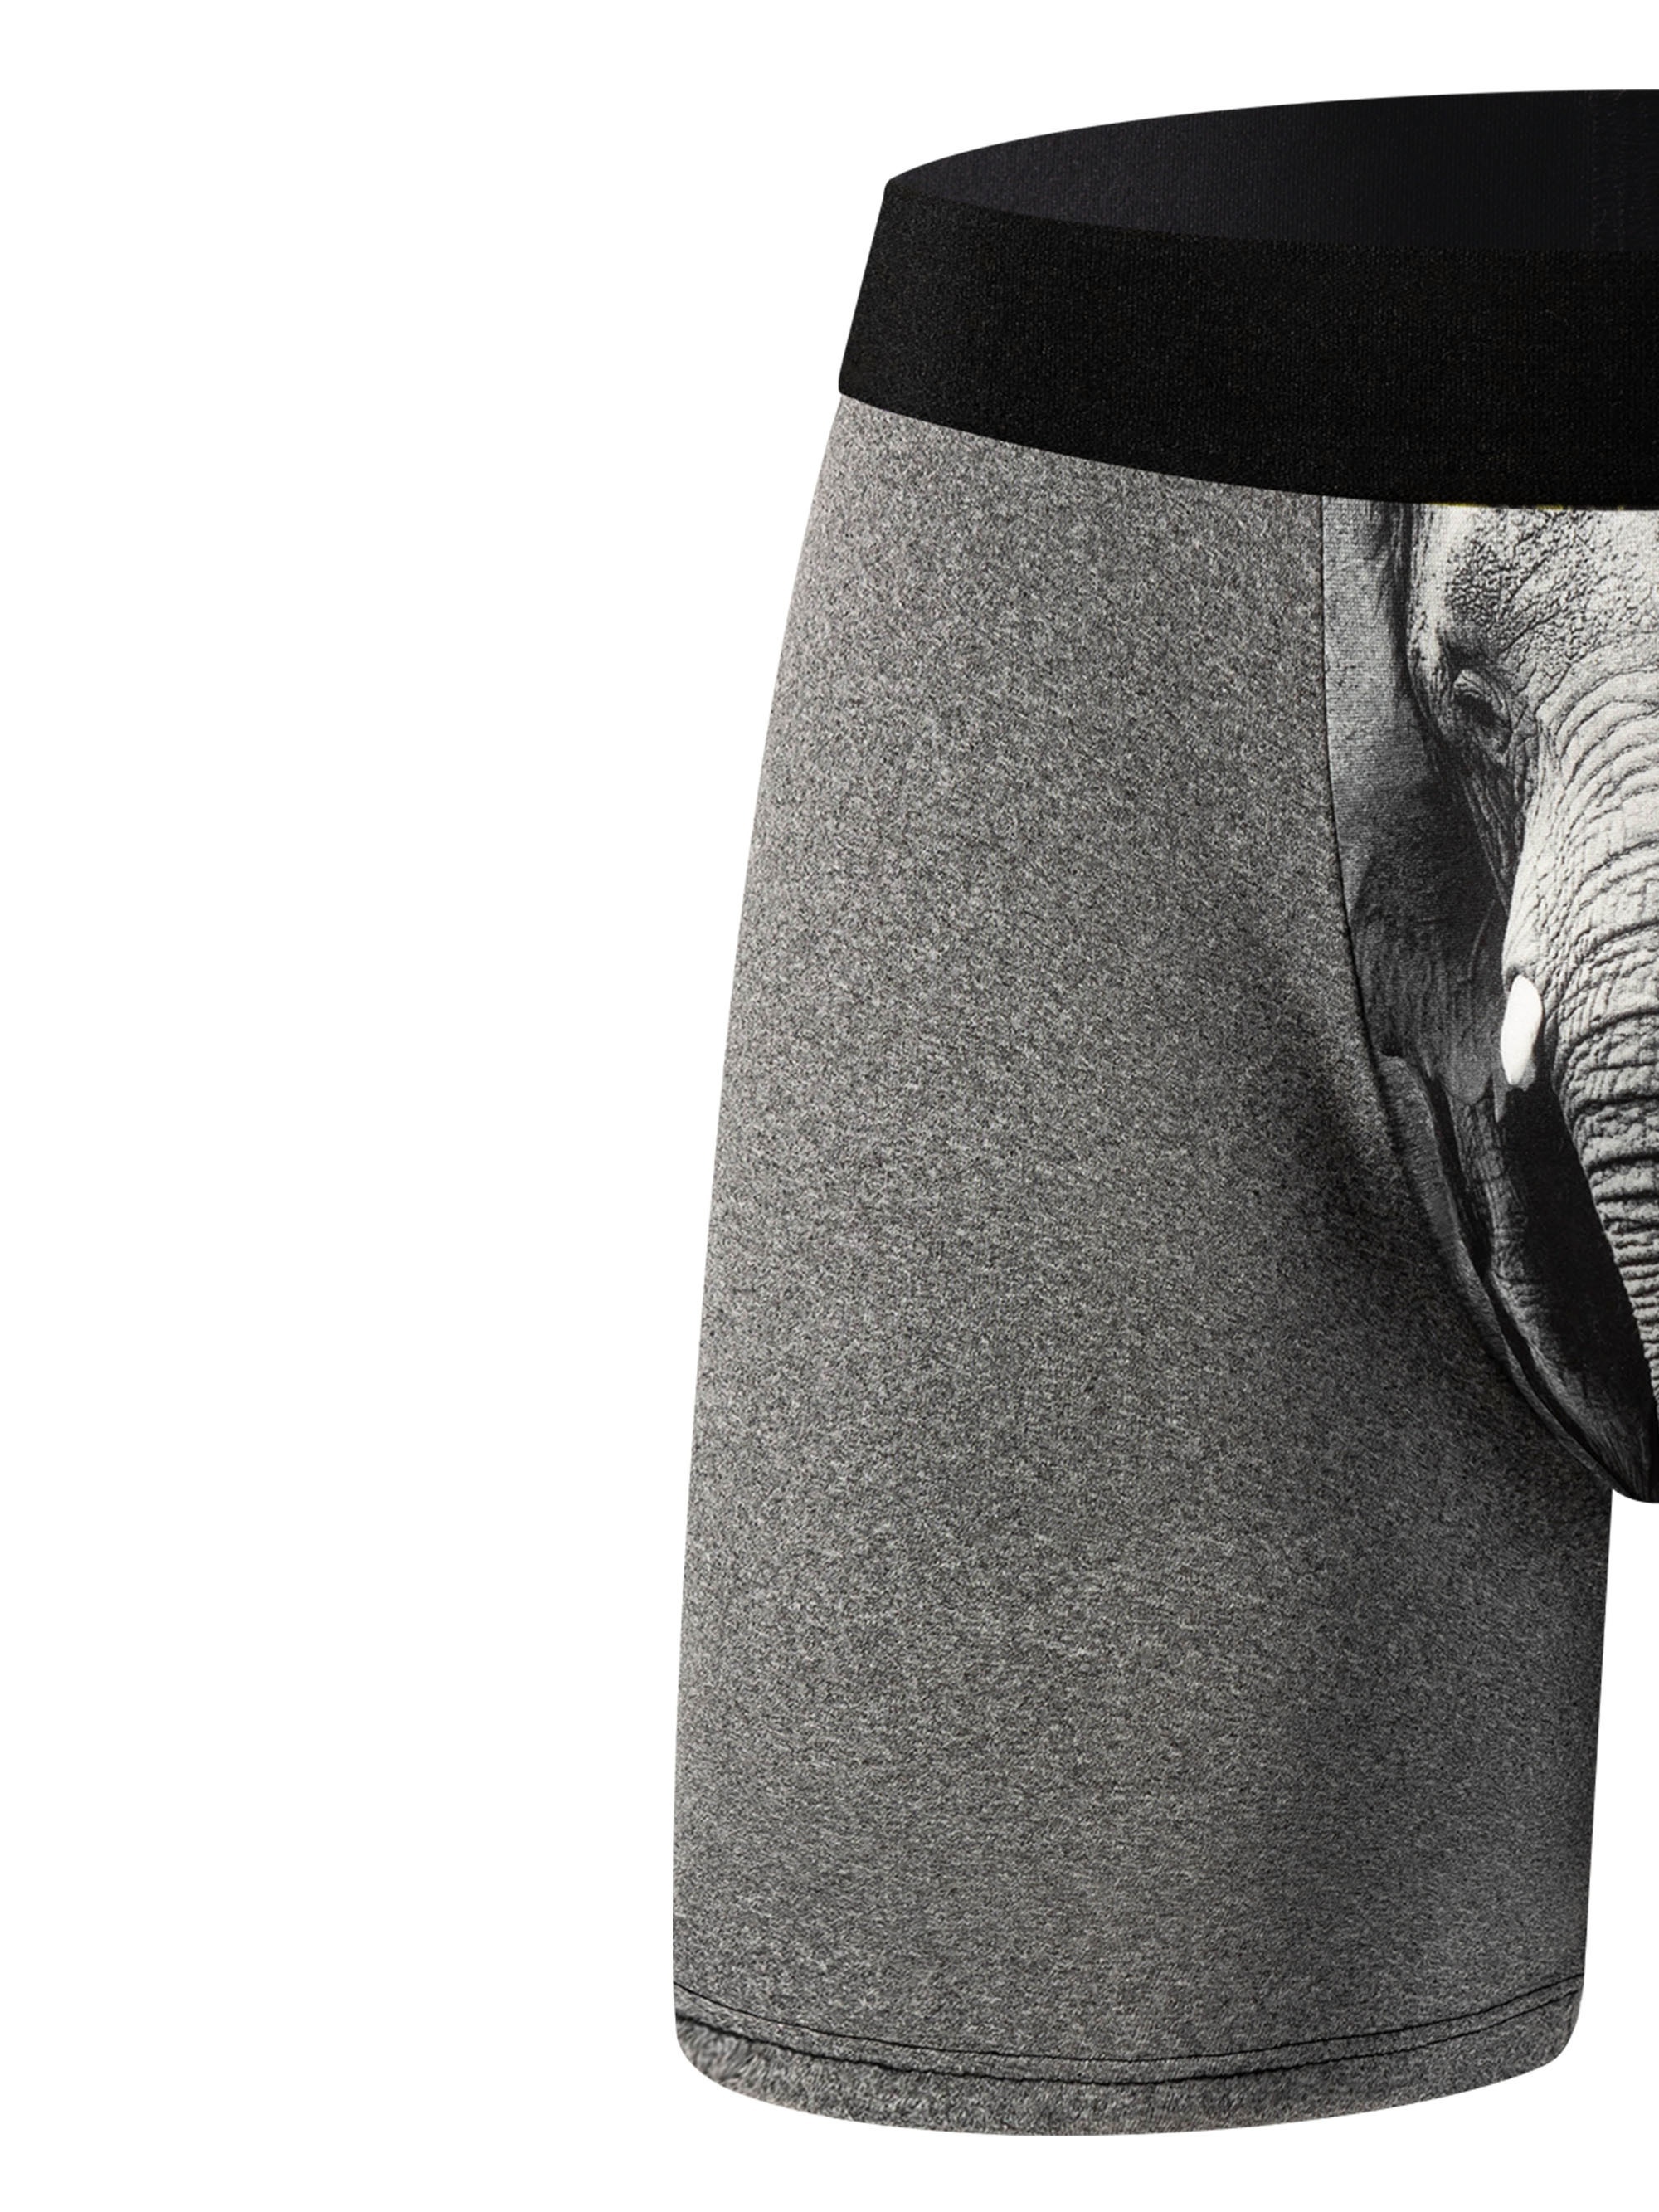 Elephant Print Plus Size Men's Long Boxers Briefs Shorts - Temu